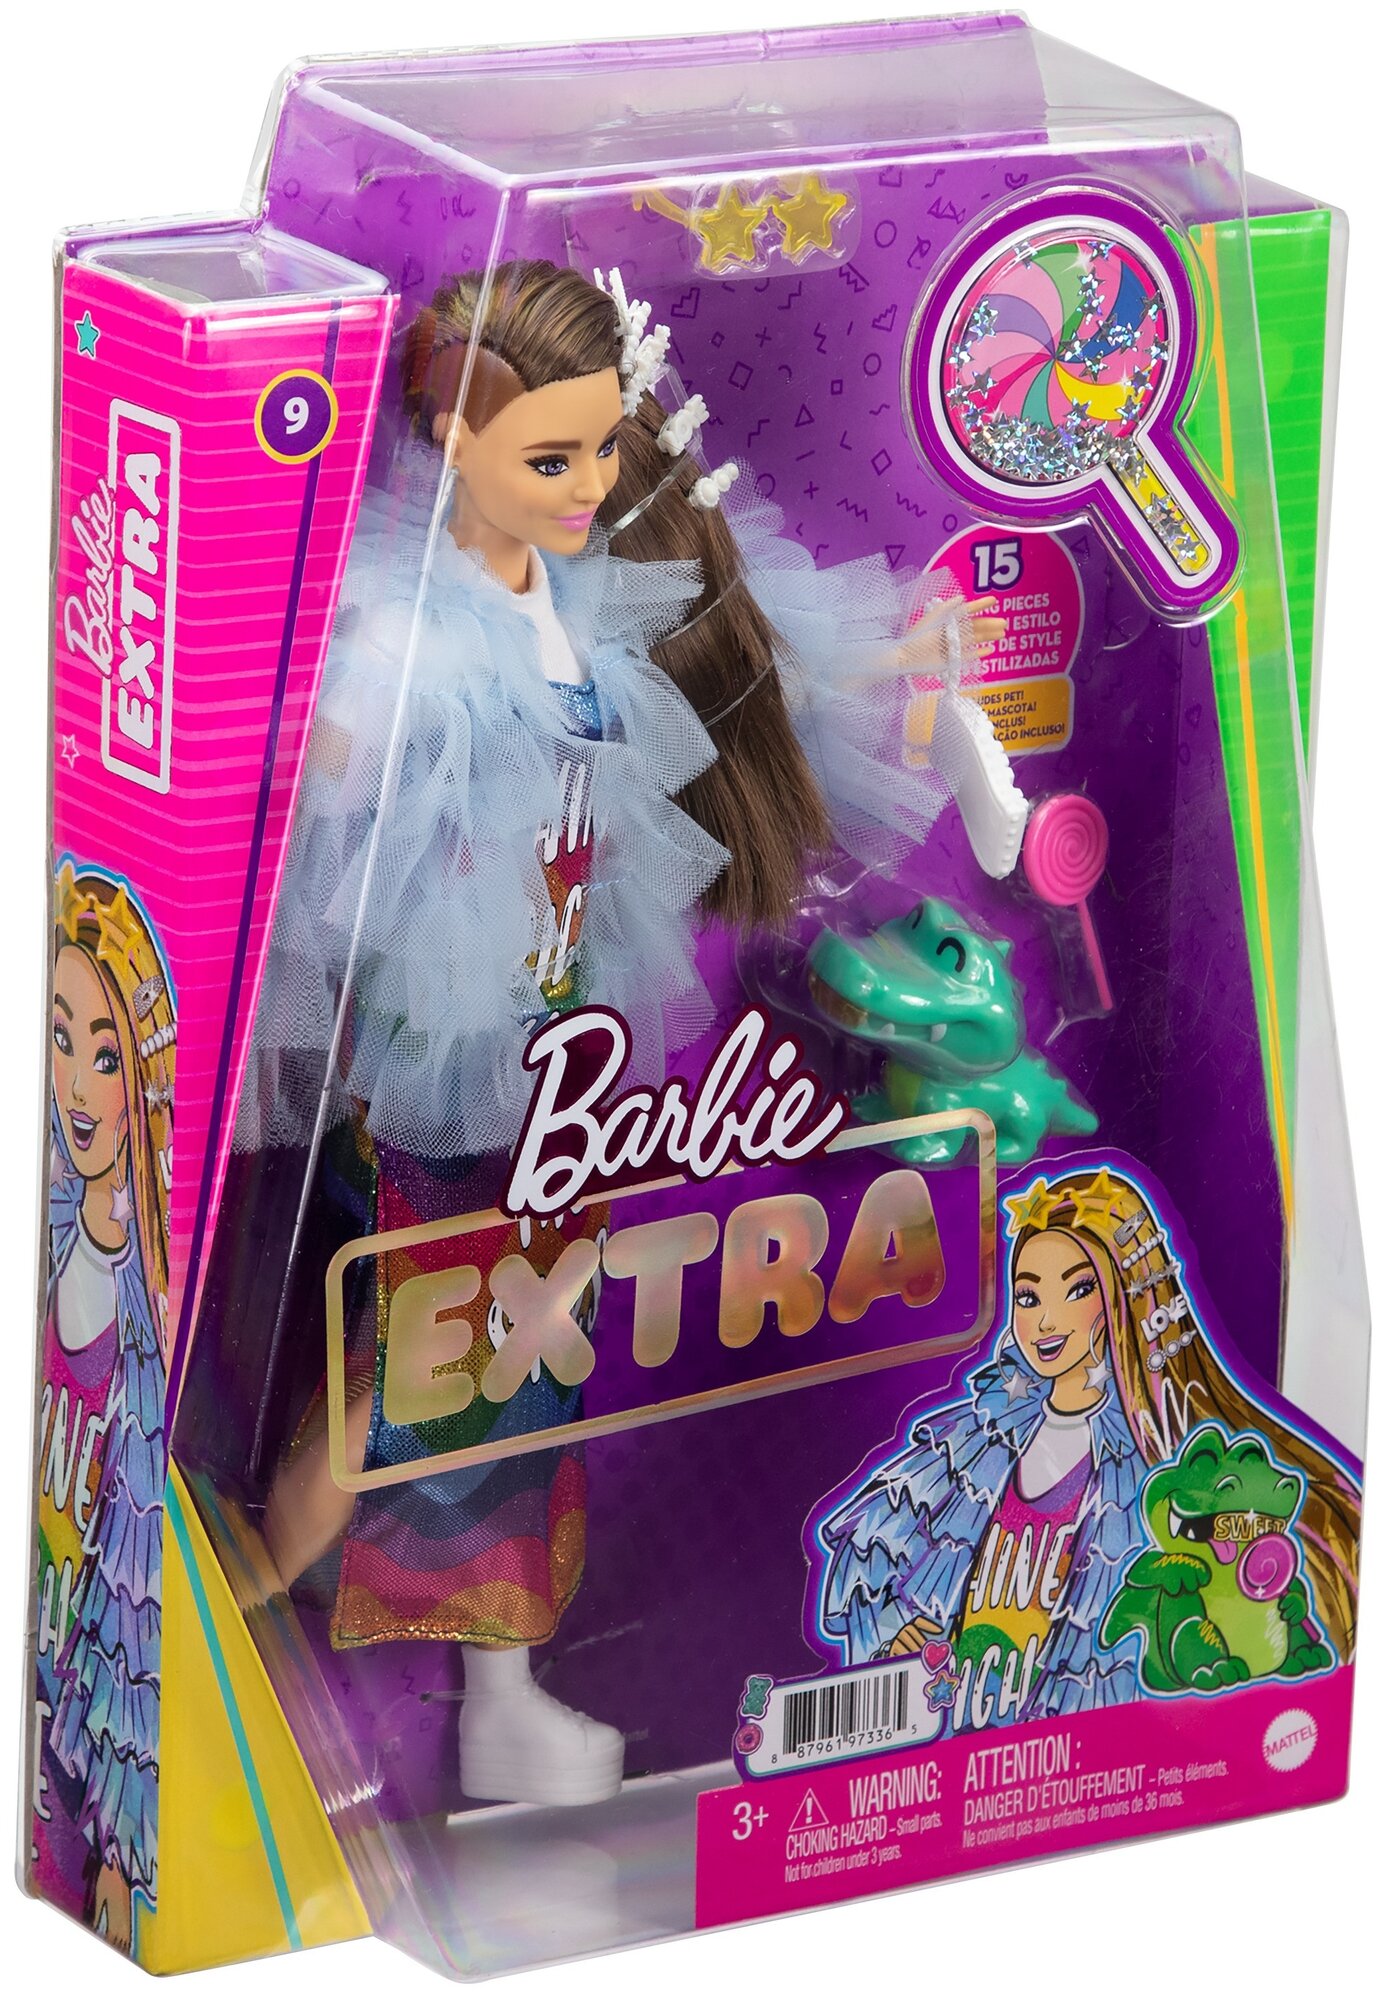 Barbie Кукла Экстра в радужном платье - фото №3